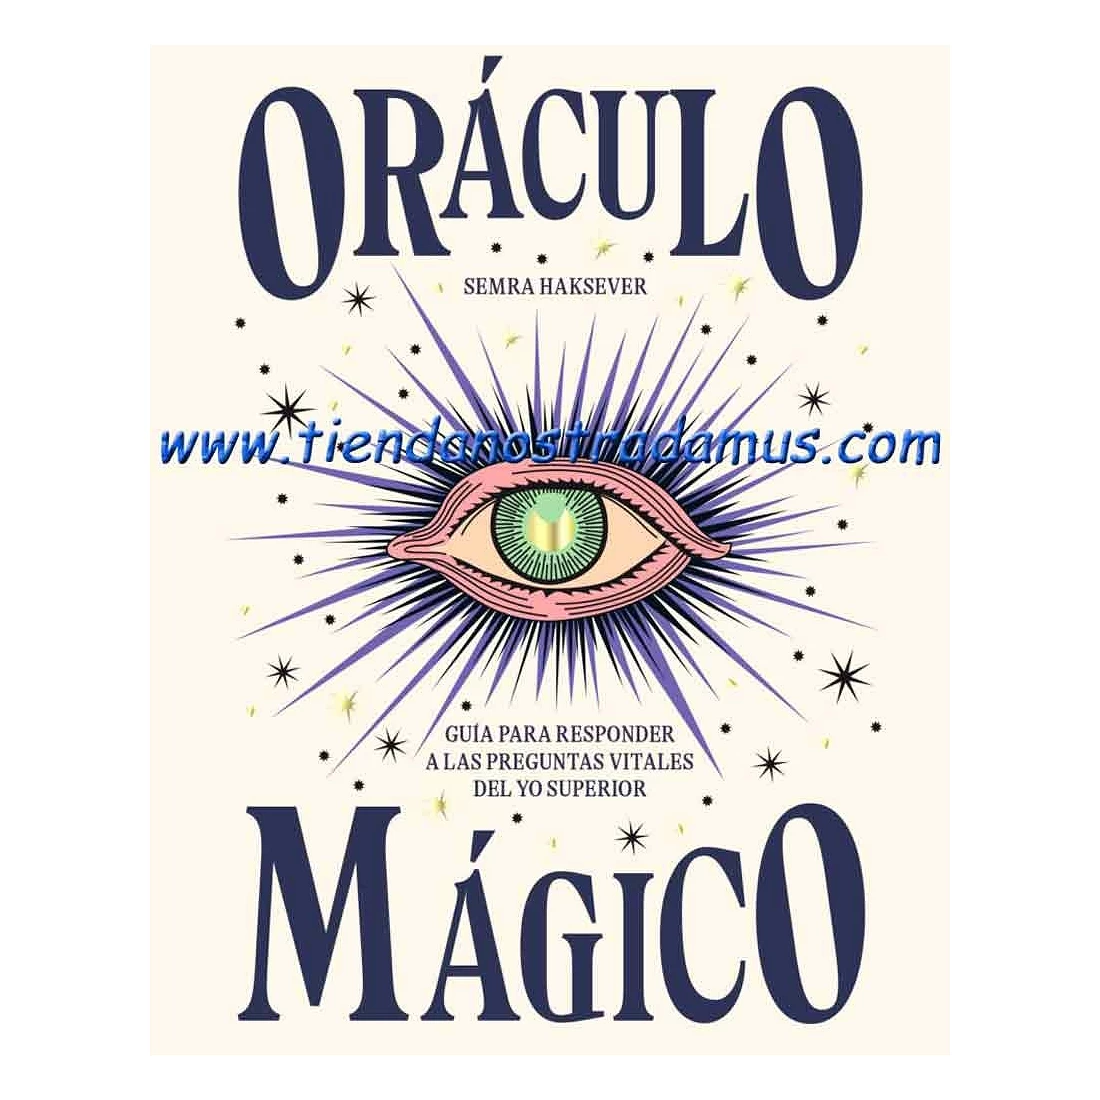 Oraculo Magico - Semra Haksever